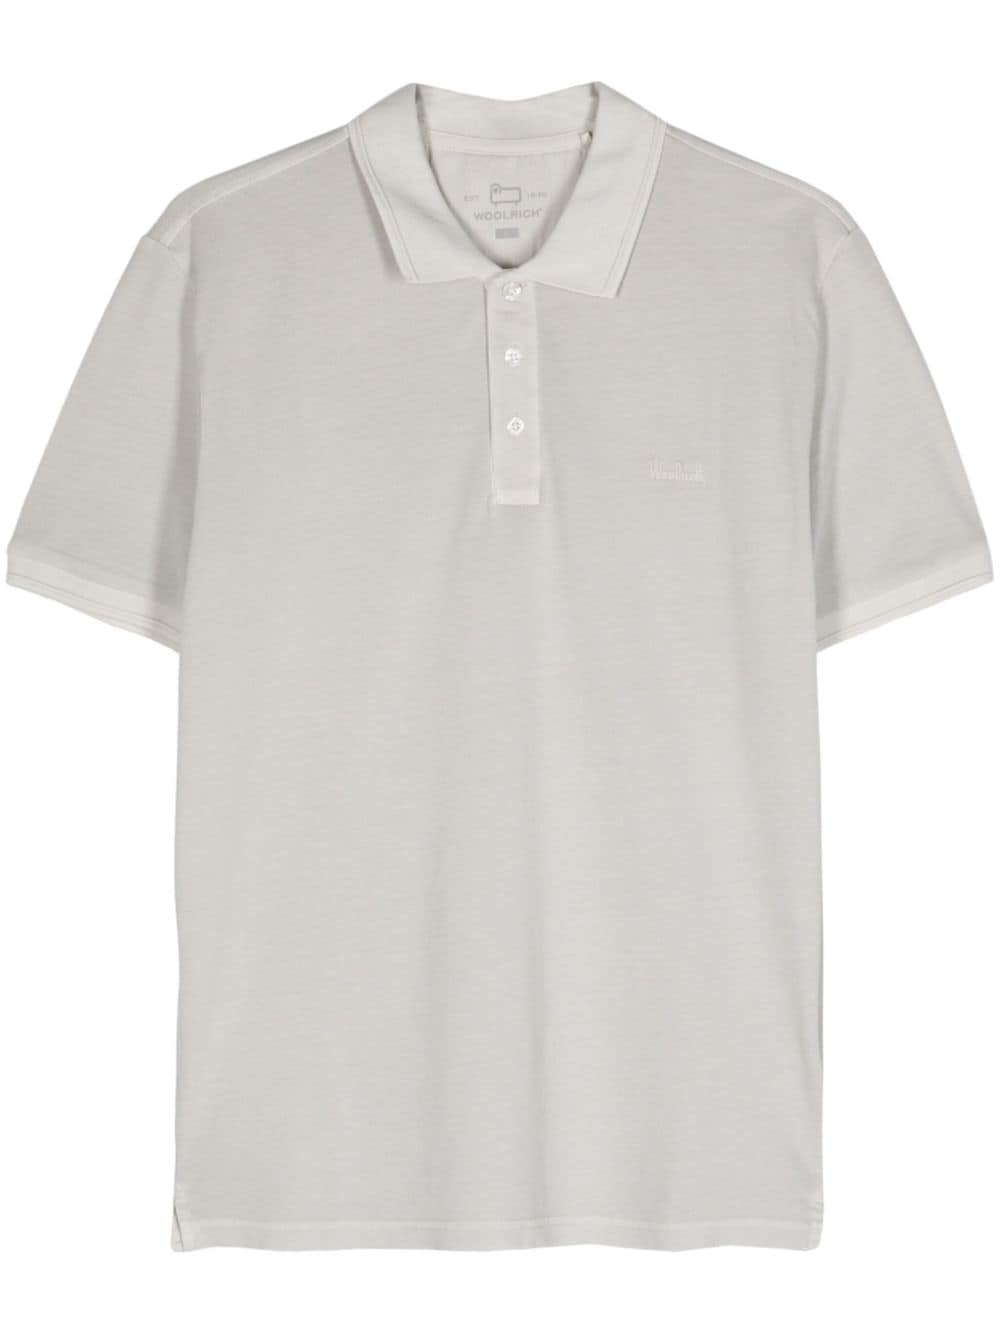 Woolrich Mackinack polo shirt - Grau von Woolrich